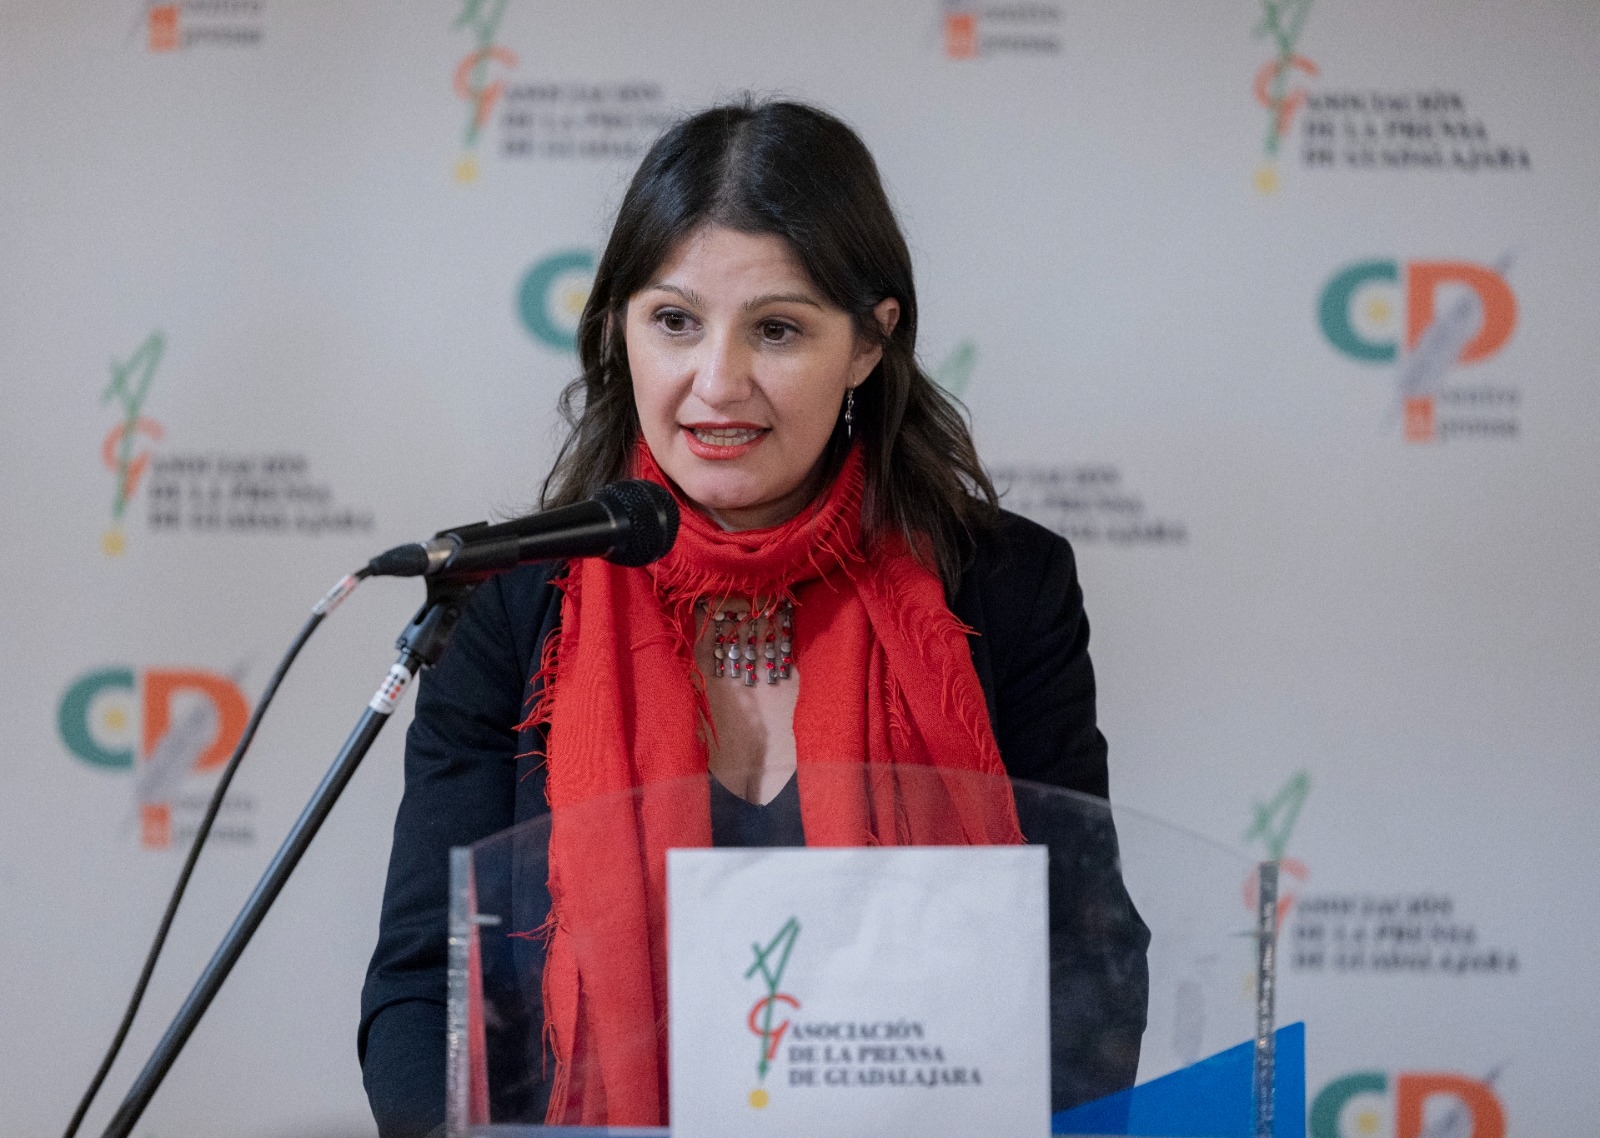 Marta Perruca, Premio Libertad de Expresión de la APG 2022//Imagen: Raquel Triguero